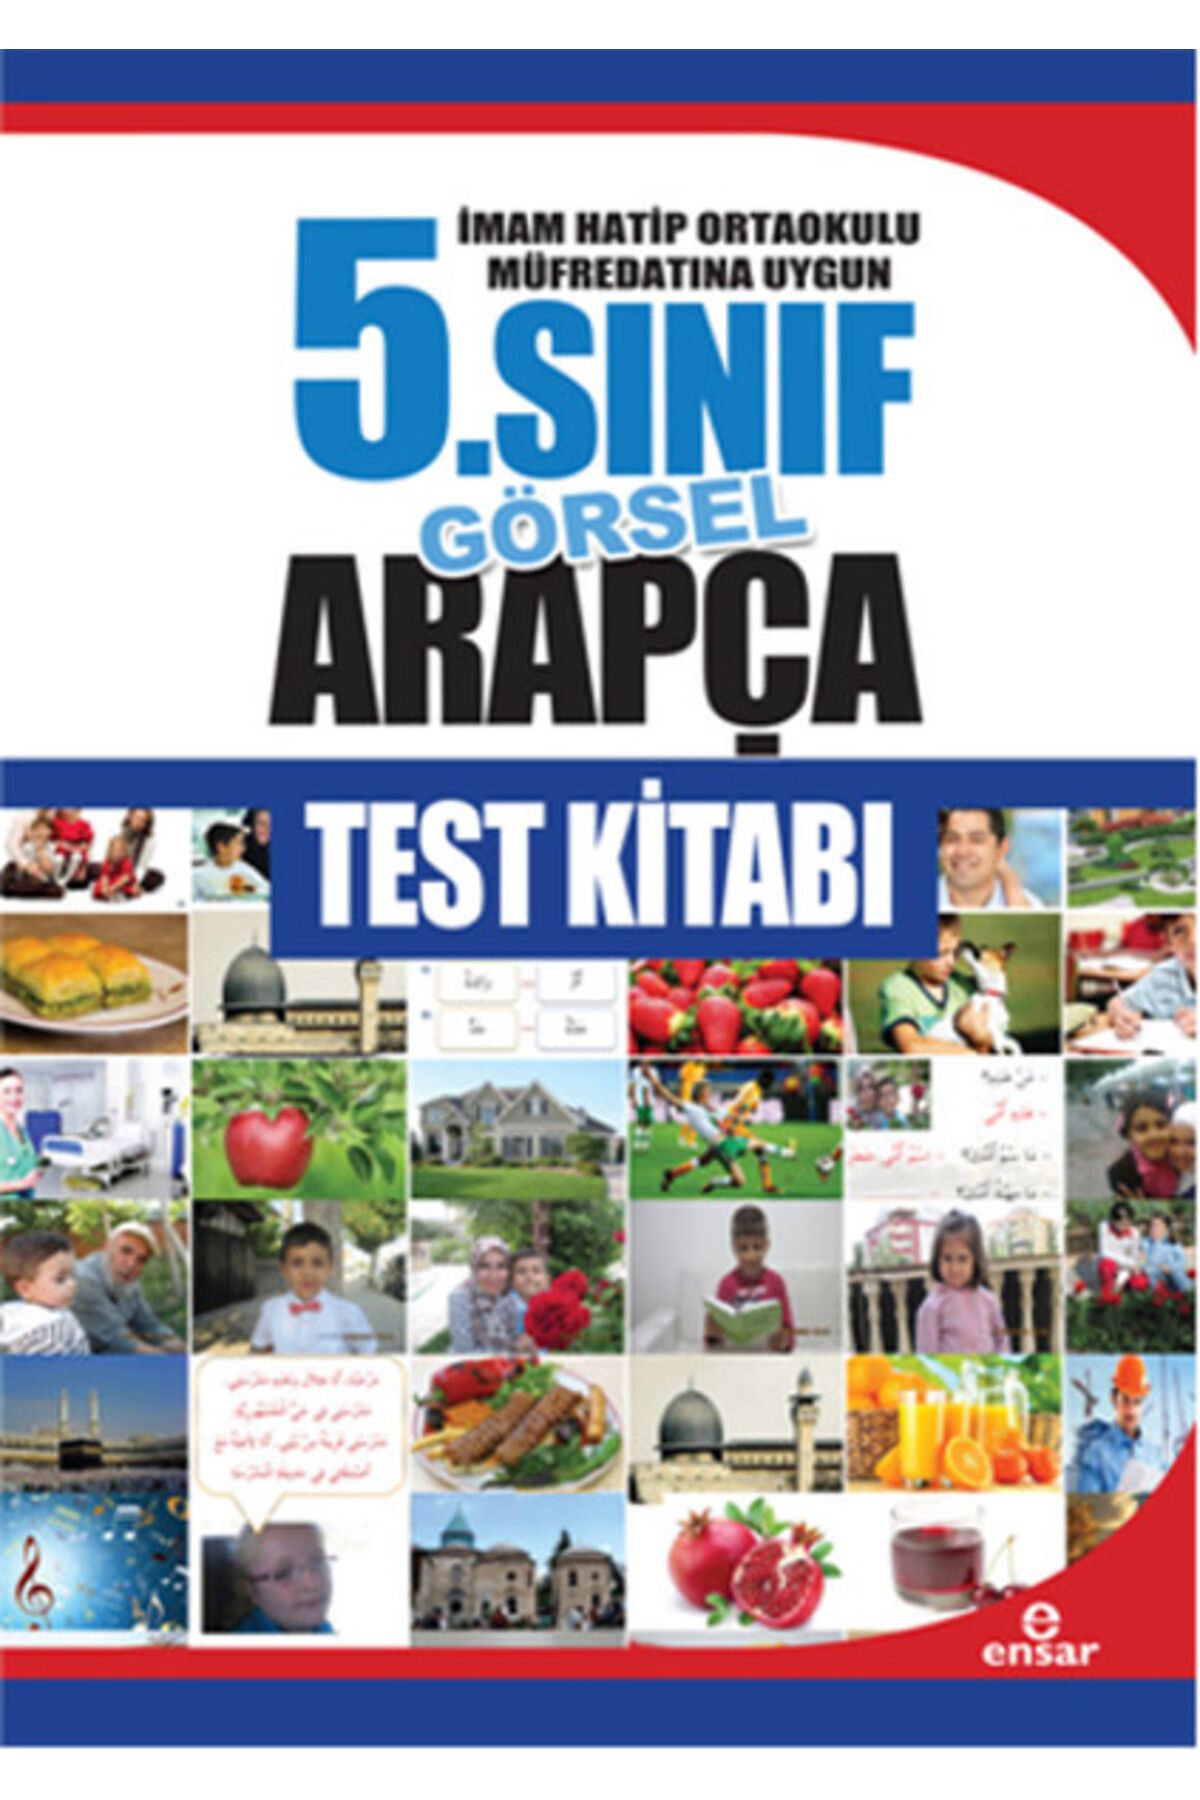 Genel Markalar 5. Sınıf Görsel Arapça Test Kitabı / Imam Hatip Ortaokulu Müfredatına Uygun